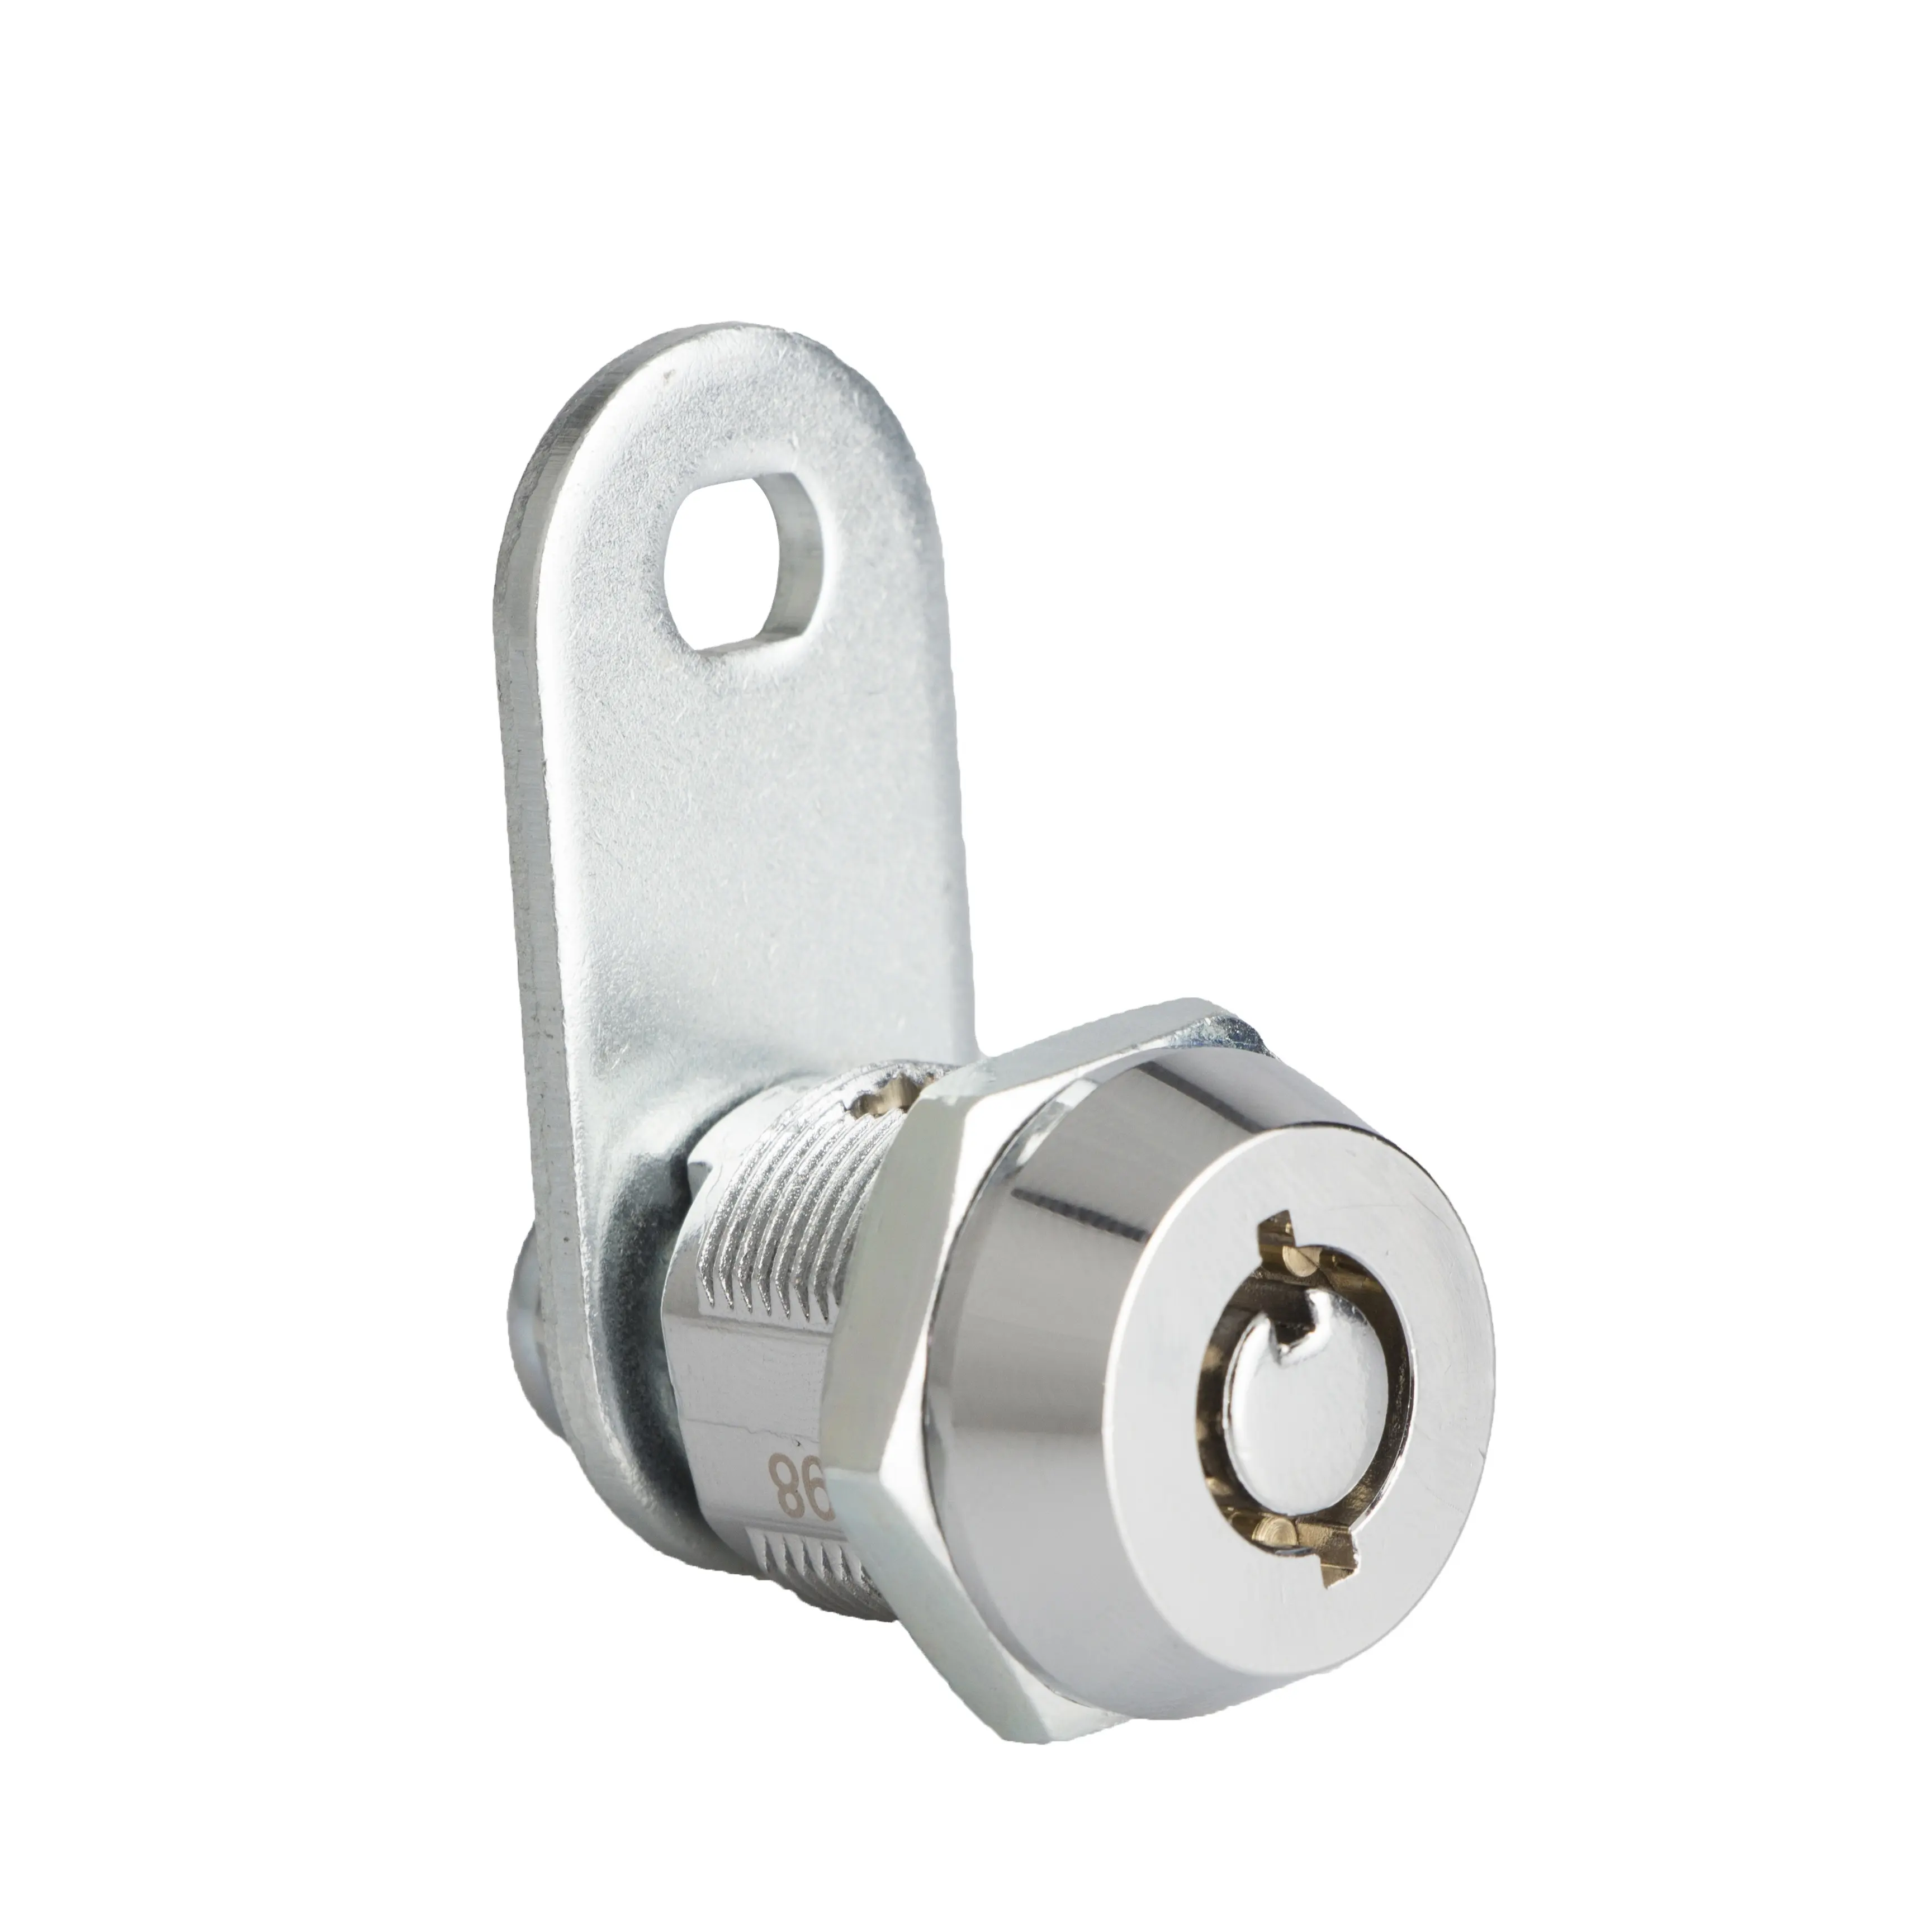 JK500 camlocks एक सुरक्षा कुंजी सभी सस्ते कुंजी के साथ विभिन्न सांचा ताला सिलेंडर लॉकर के लिए चाबी ताला कैबिनेट